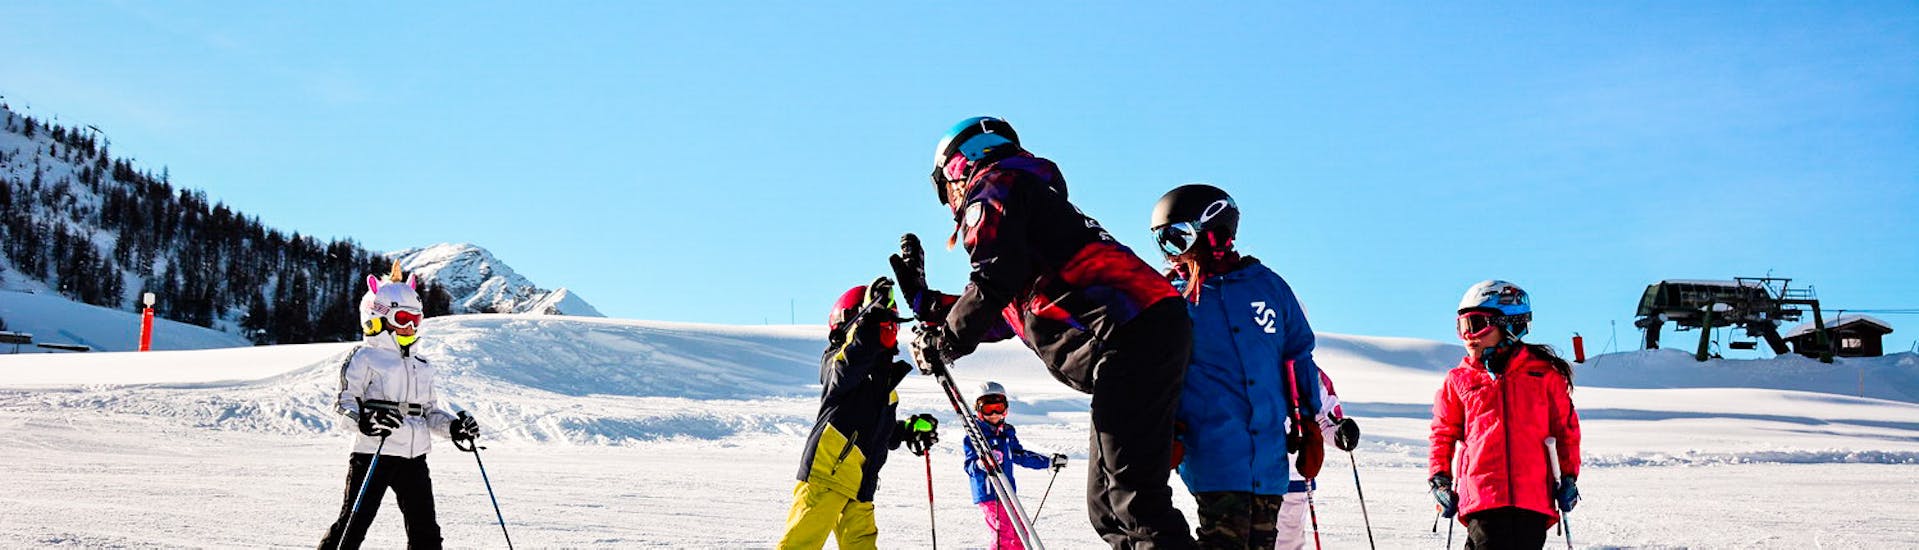 Cours de ski Enfants (6-11 ans) pour Skieurs expérimentés.